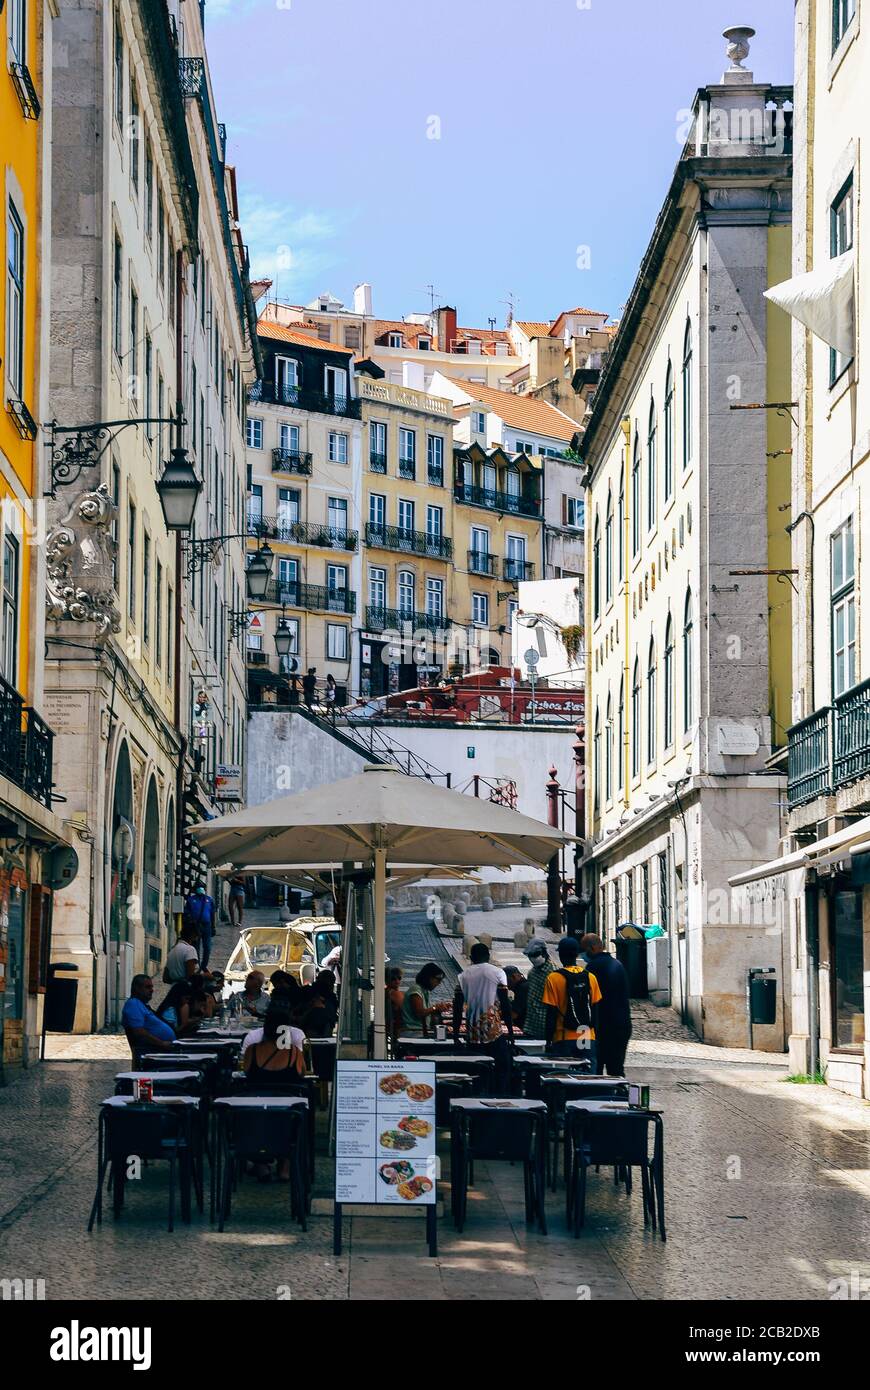 Café und Restaurant im belebten historischen Zentrum Baixa District. Perspektivischer Blick auf die Straße von Geschäften und Cafés in traditionellen alten Gebäuden Stockfoto